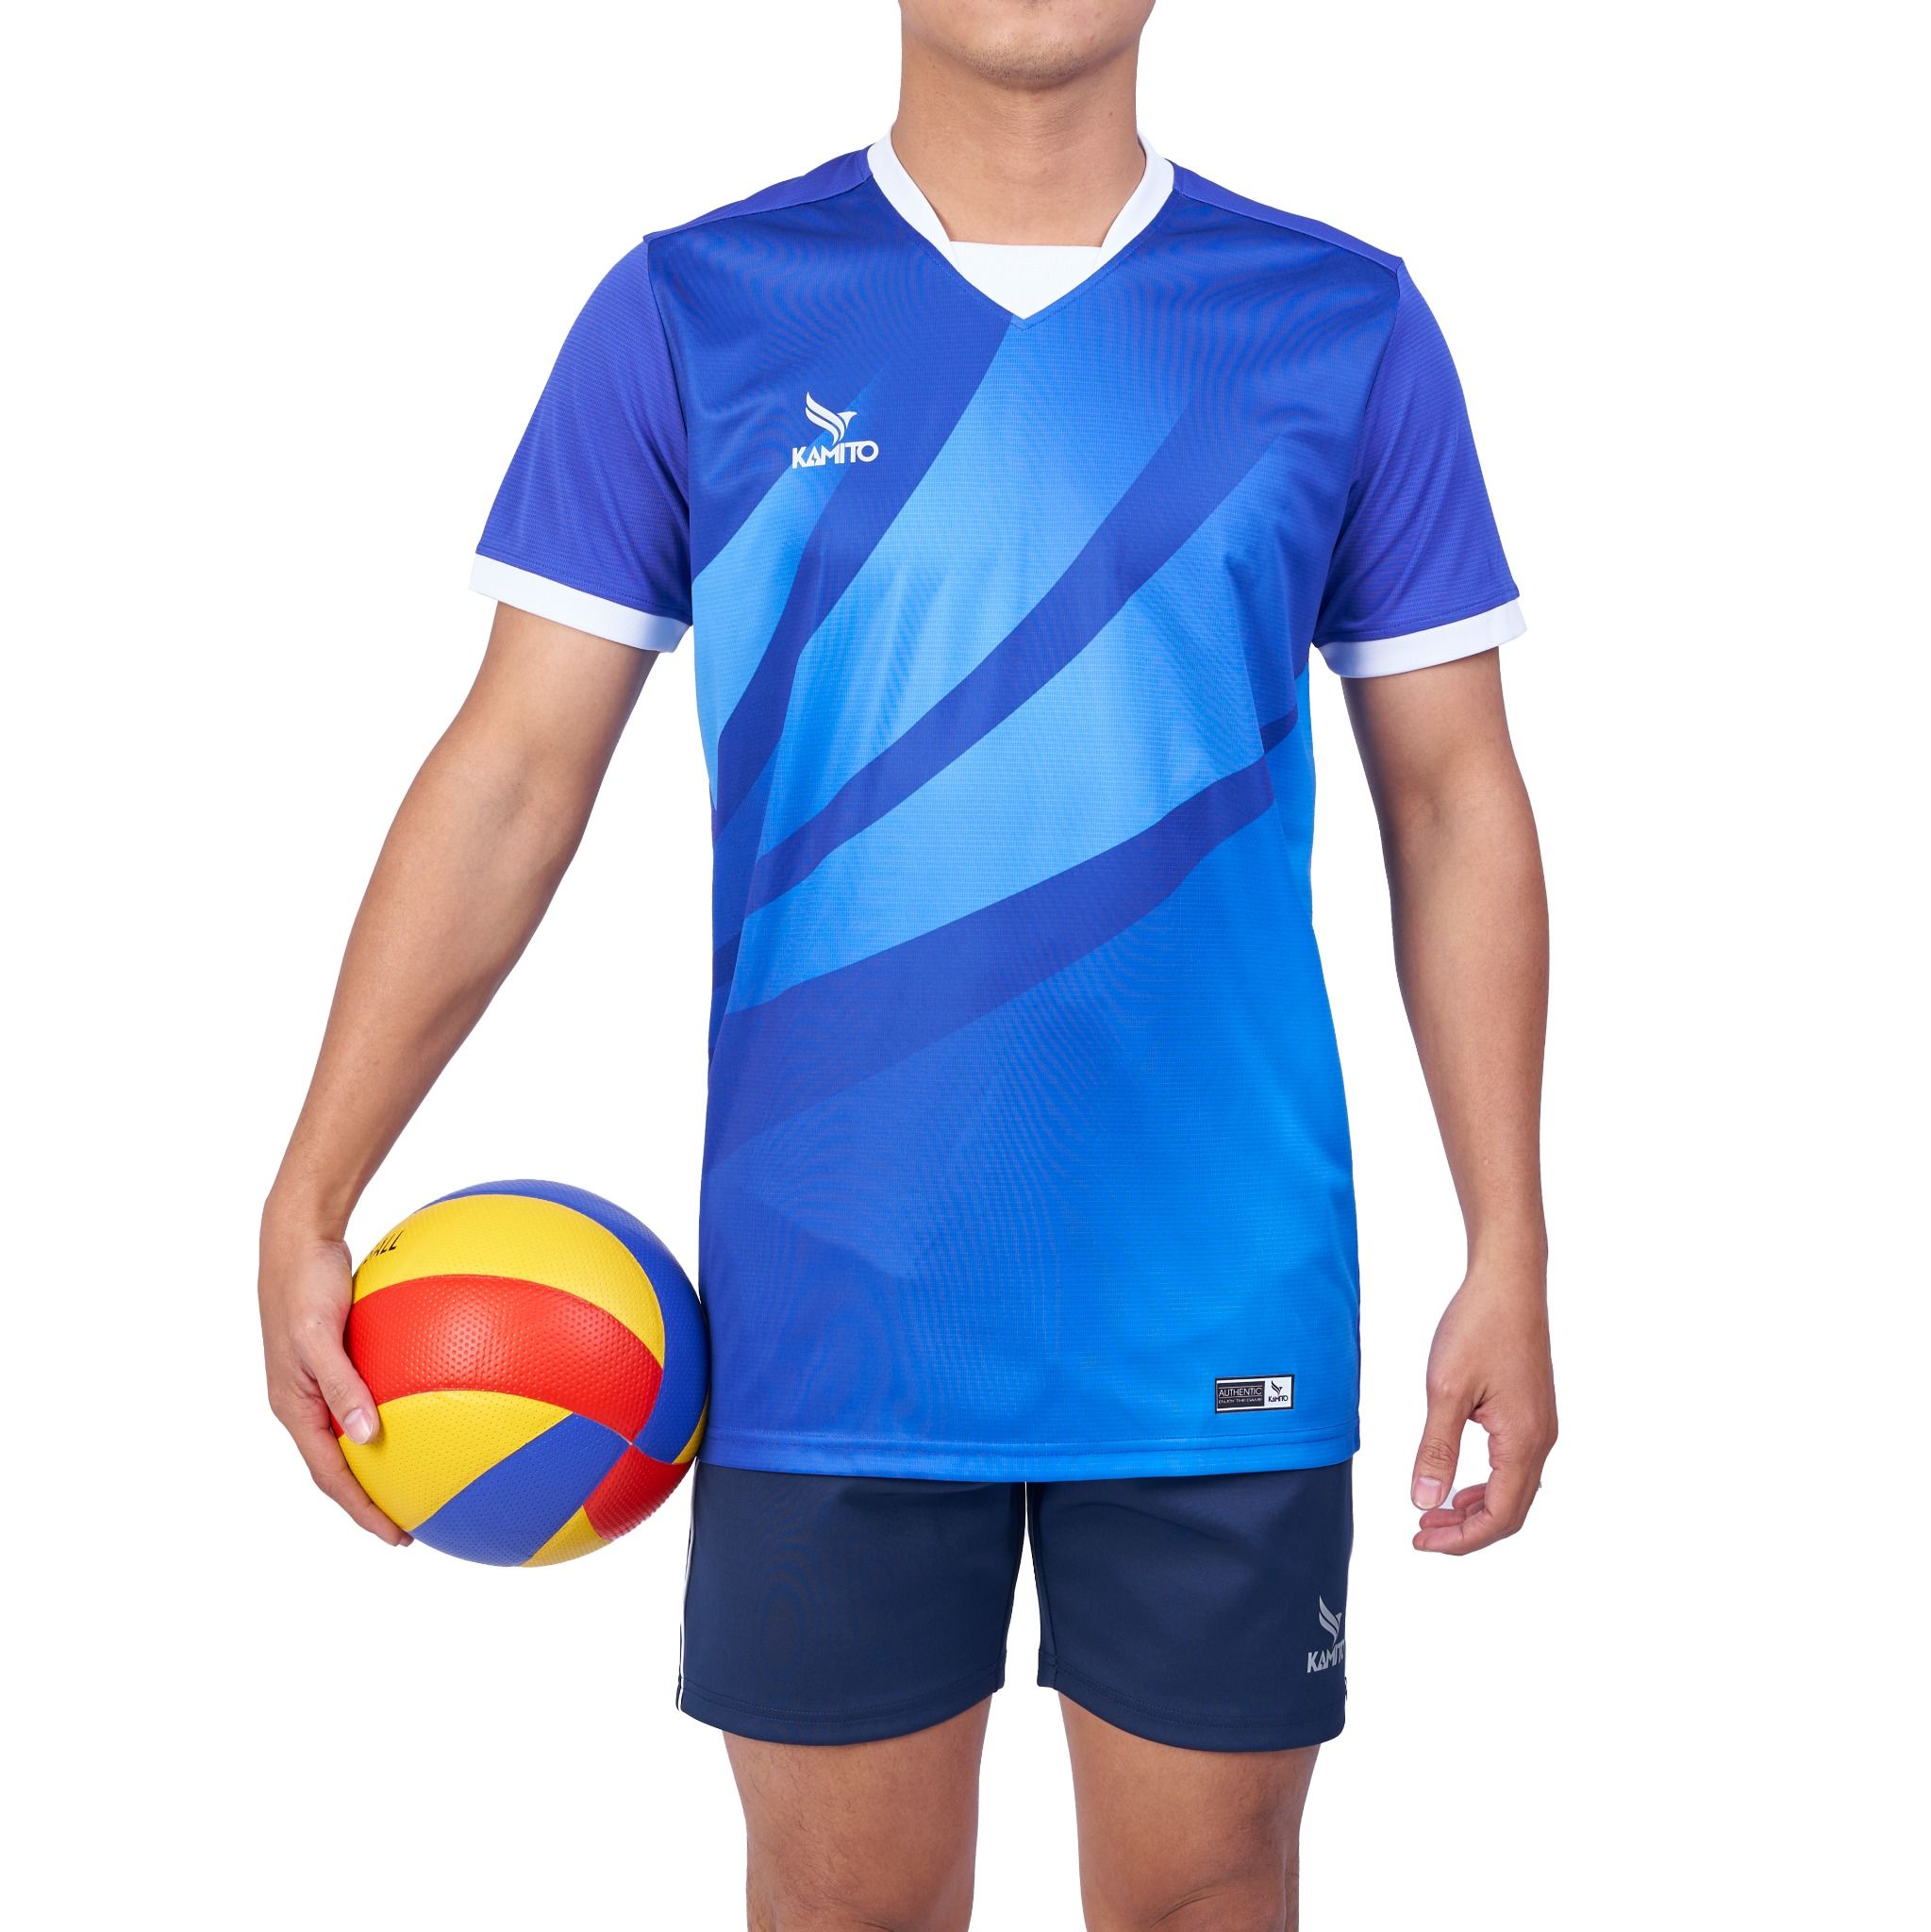  Bộ quần áo bóng chuyền Kamito Libero Nam 